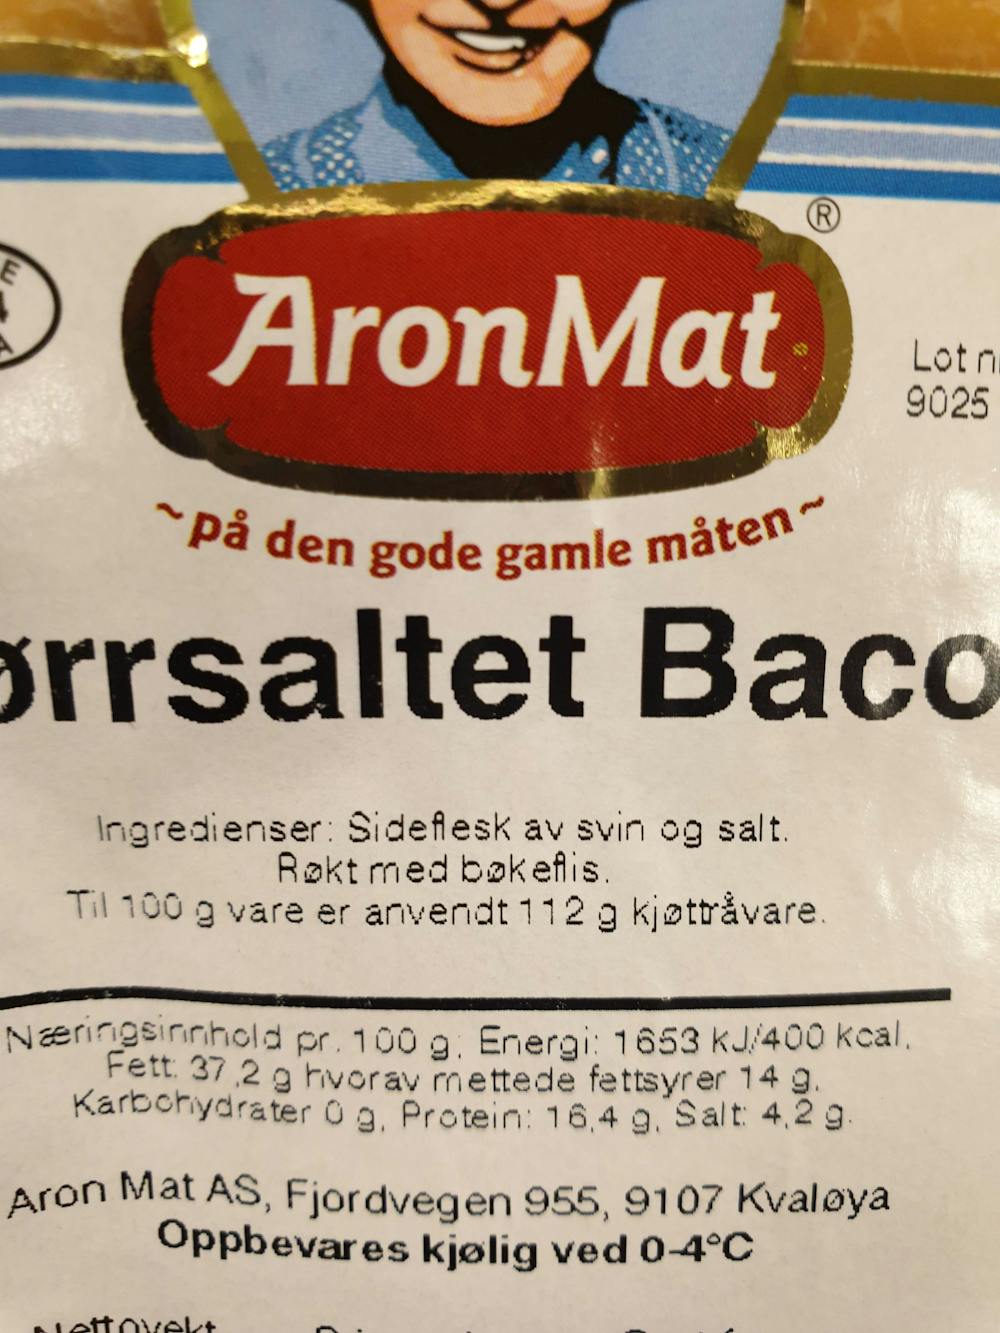 Ingredienslisten til AronMat Tørrsaltet bacon